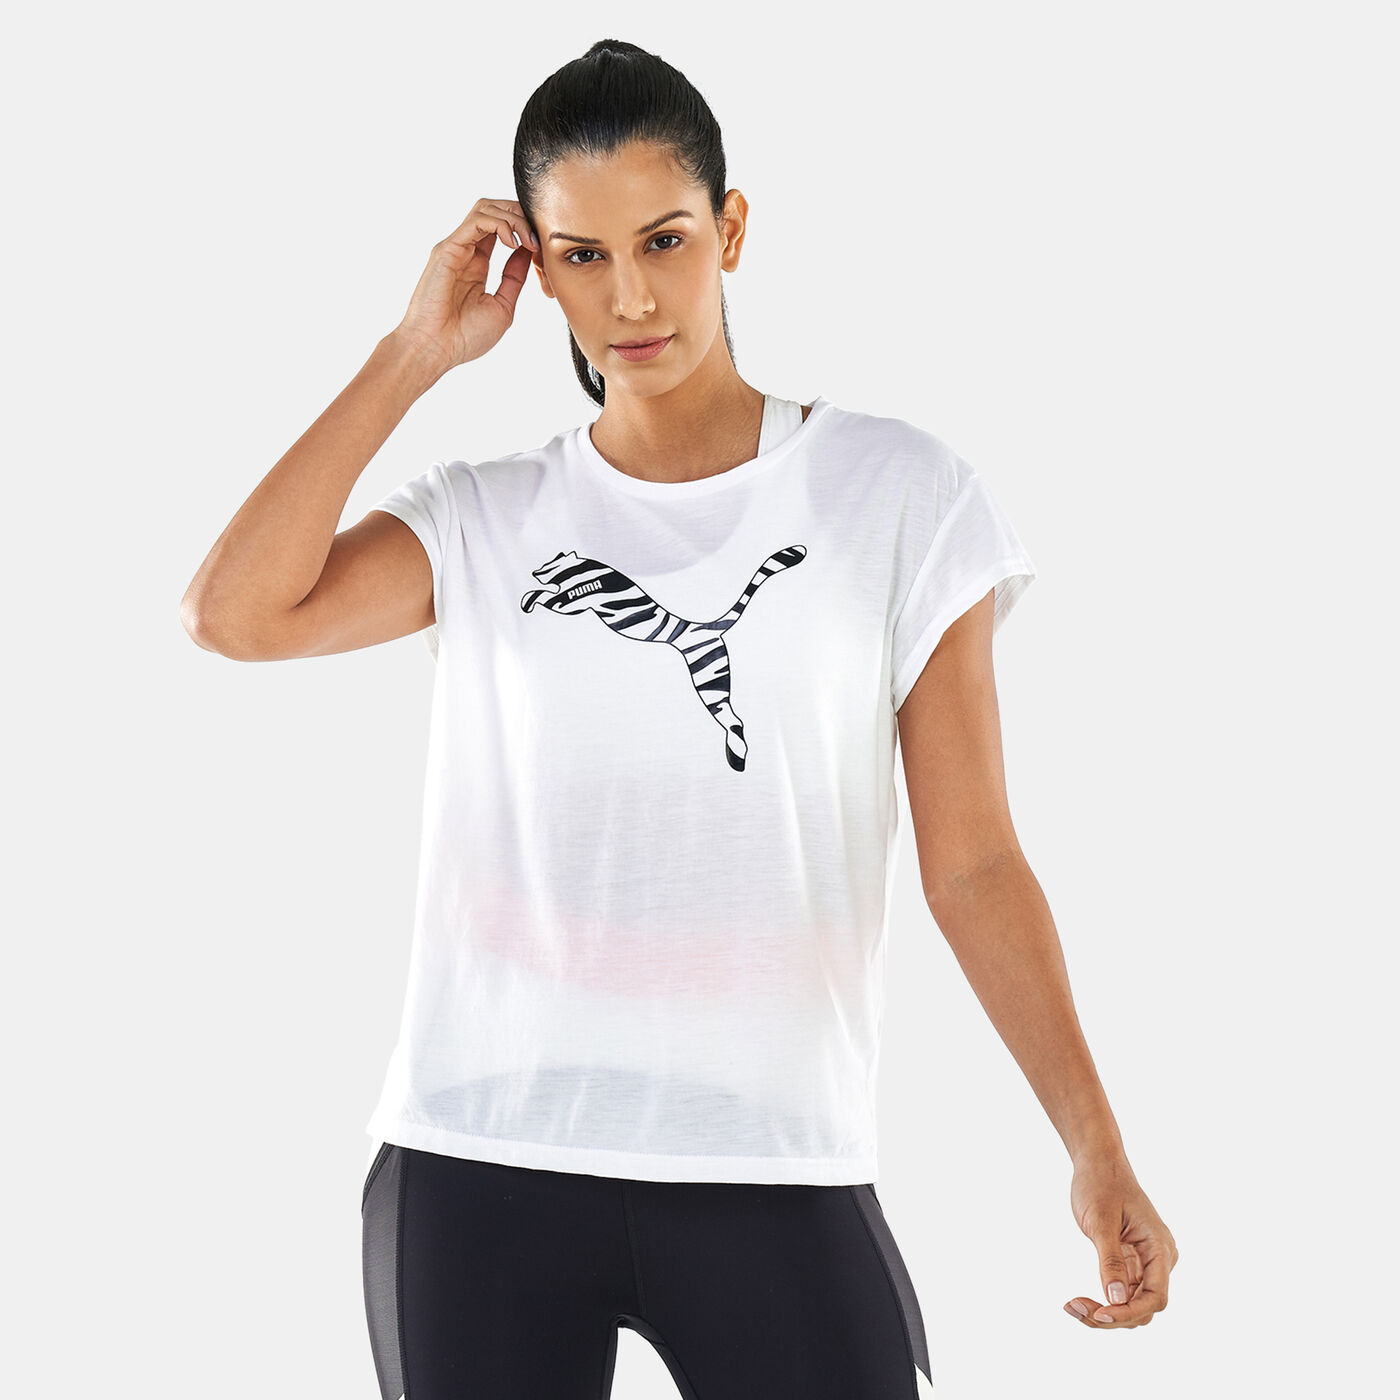 Women's Modern Sports T-Shirt